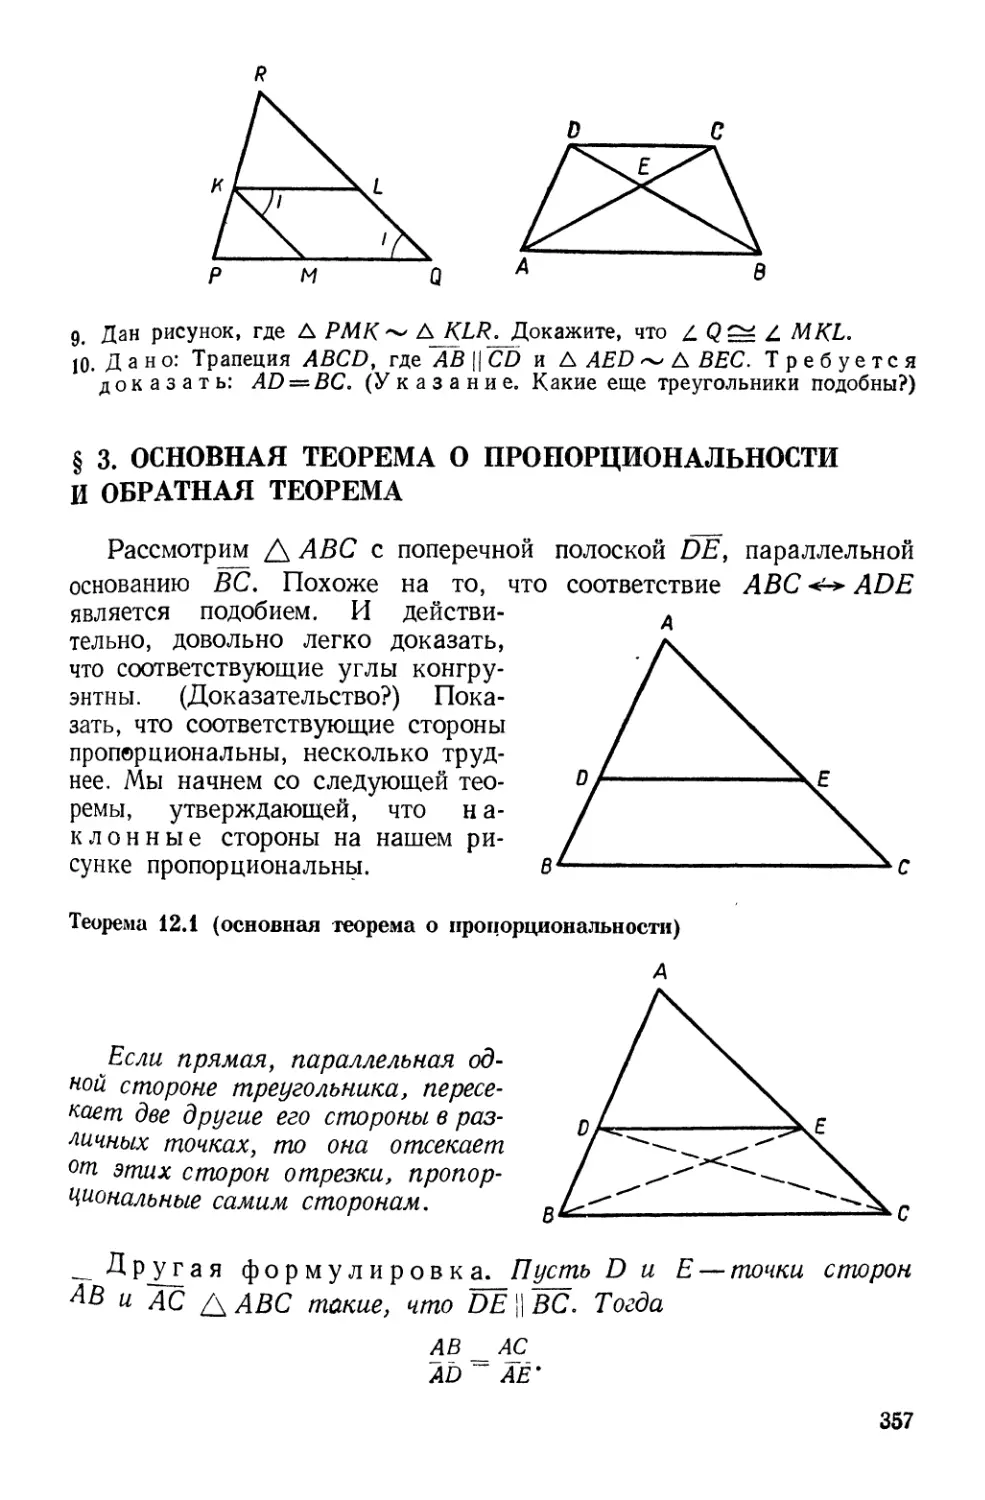 § 3. Основная теорема о пропорциональности и обратная теорема